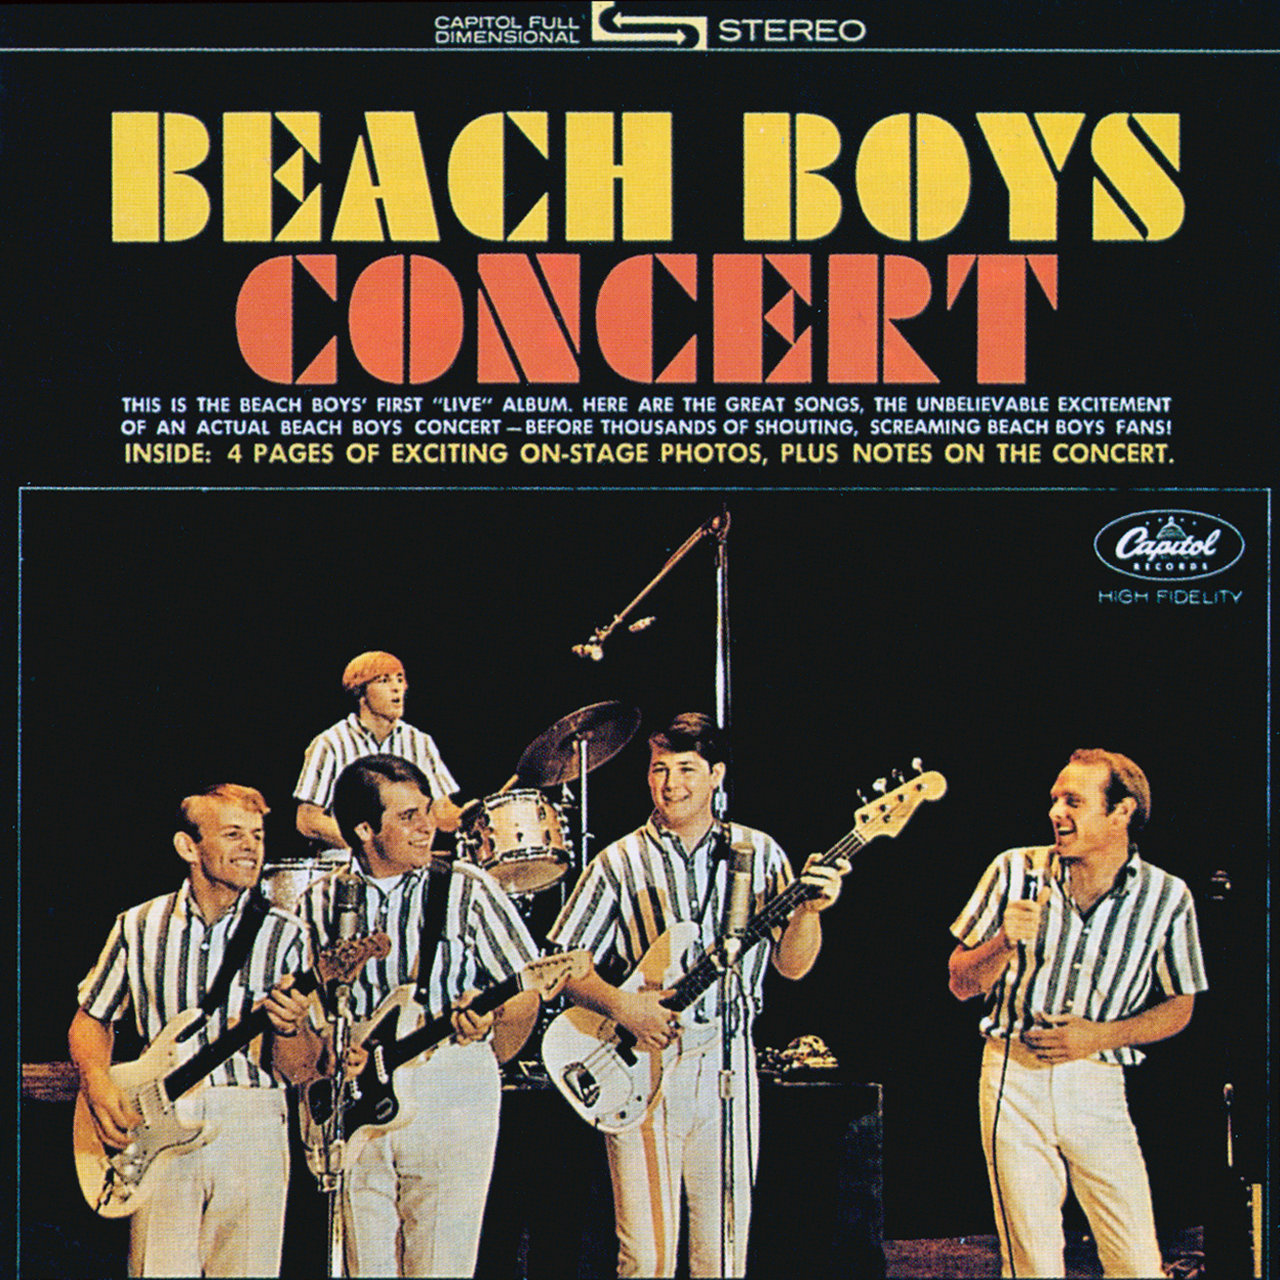 The Beach Boys - Beach Boys Concert (Live - Stereo) [1964]